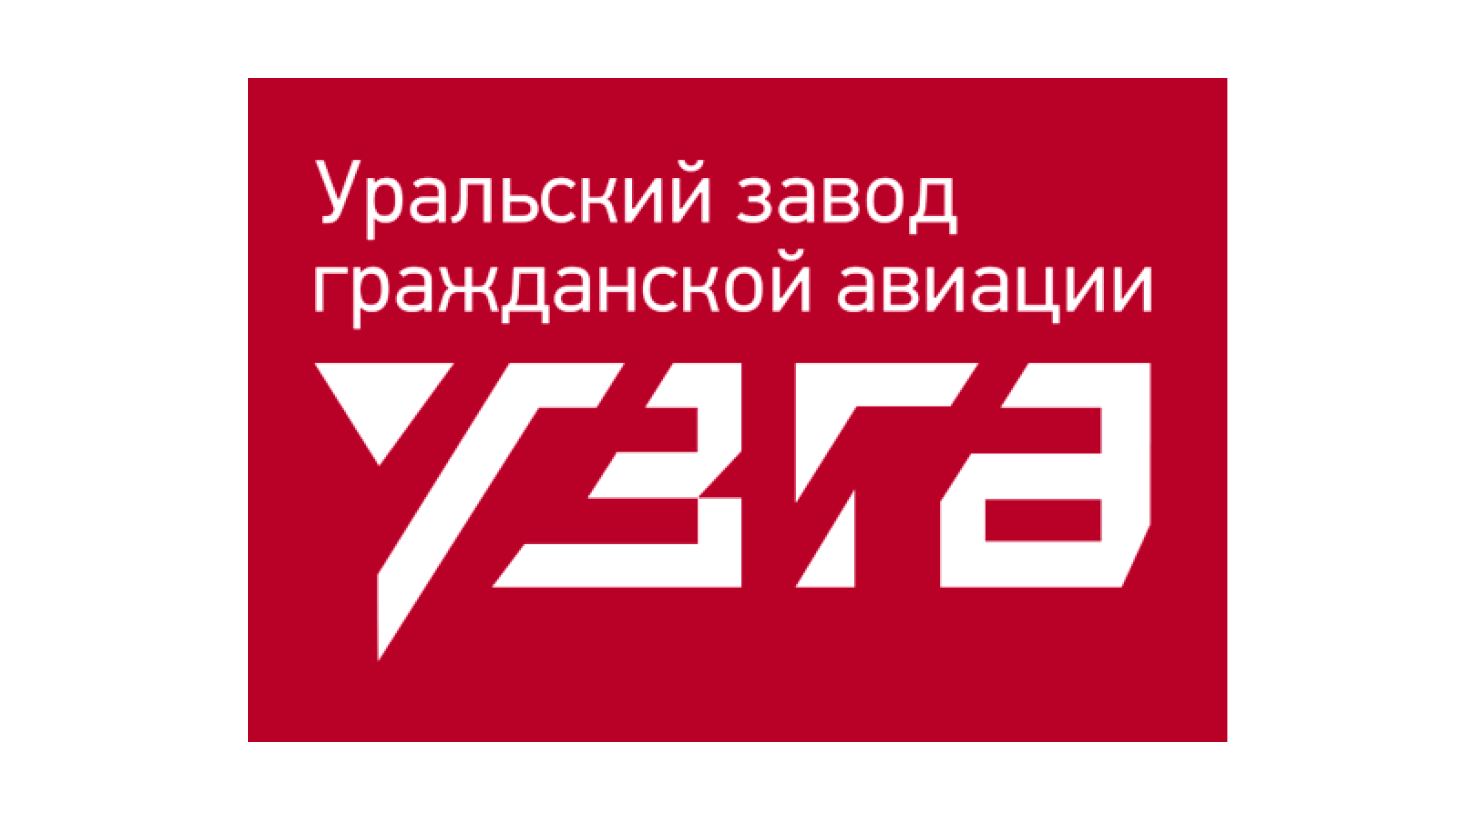 Уральский завод гражданской авиации